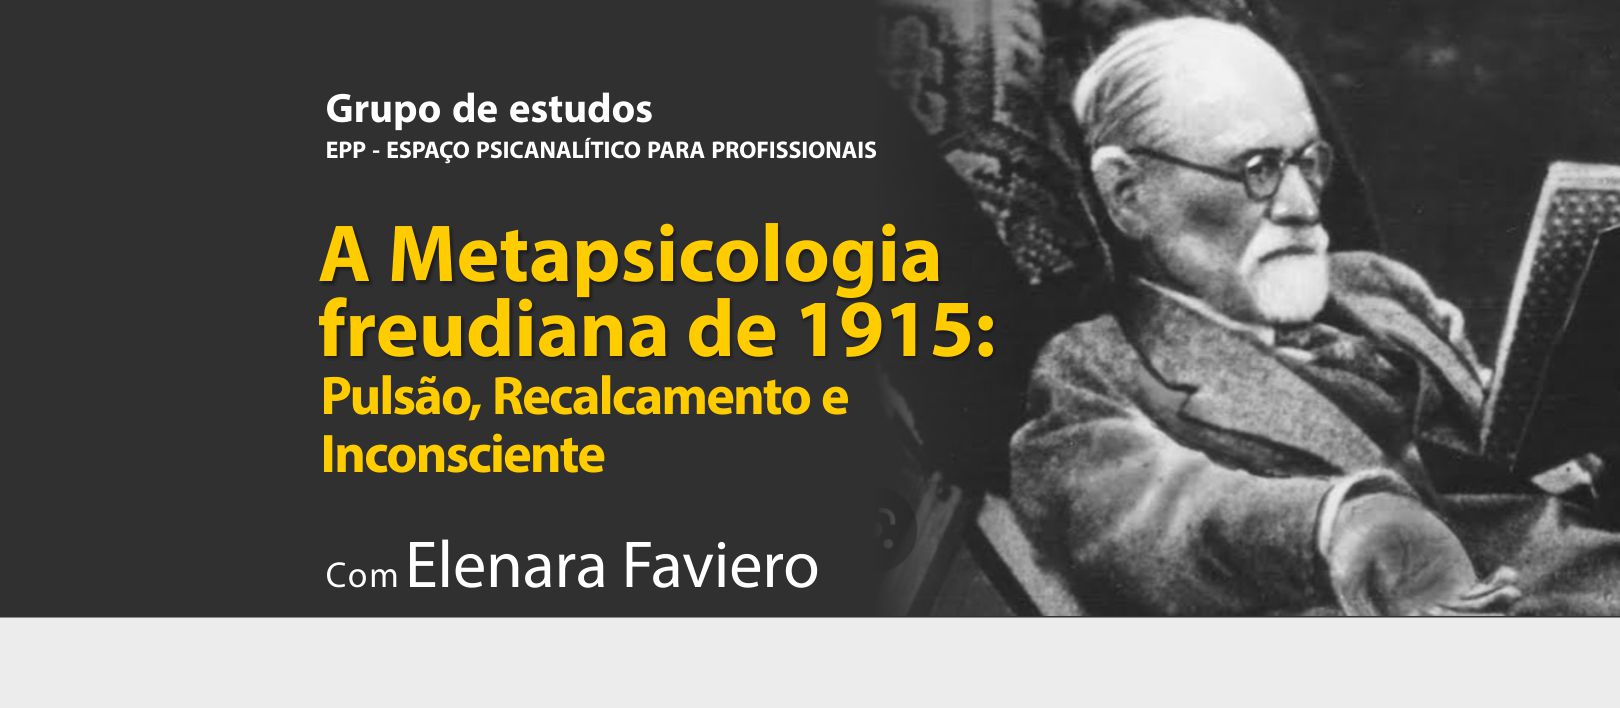 A Metapsicologia freudiana de 1915: Pulsão, Recalcamento e Inconsciente